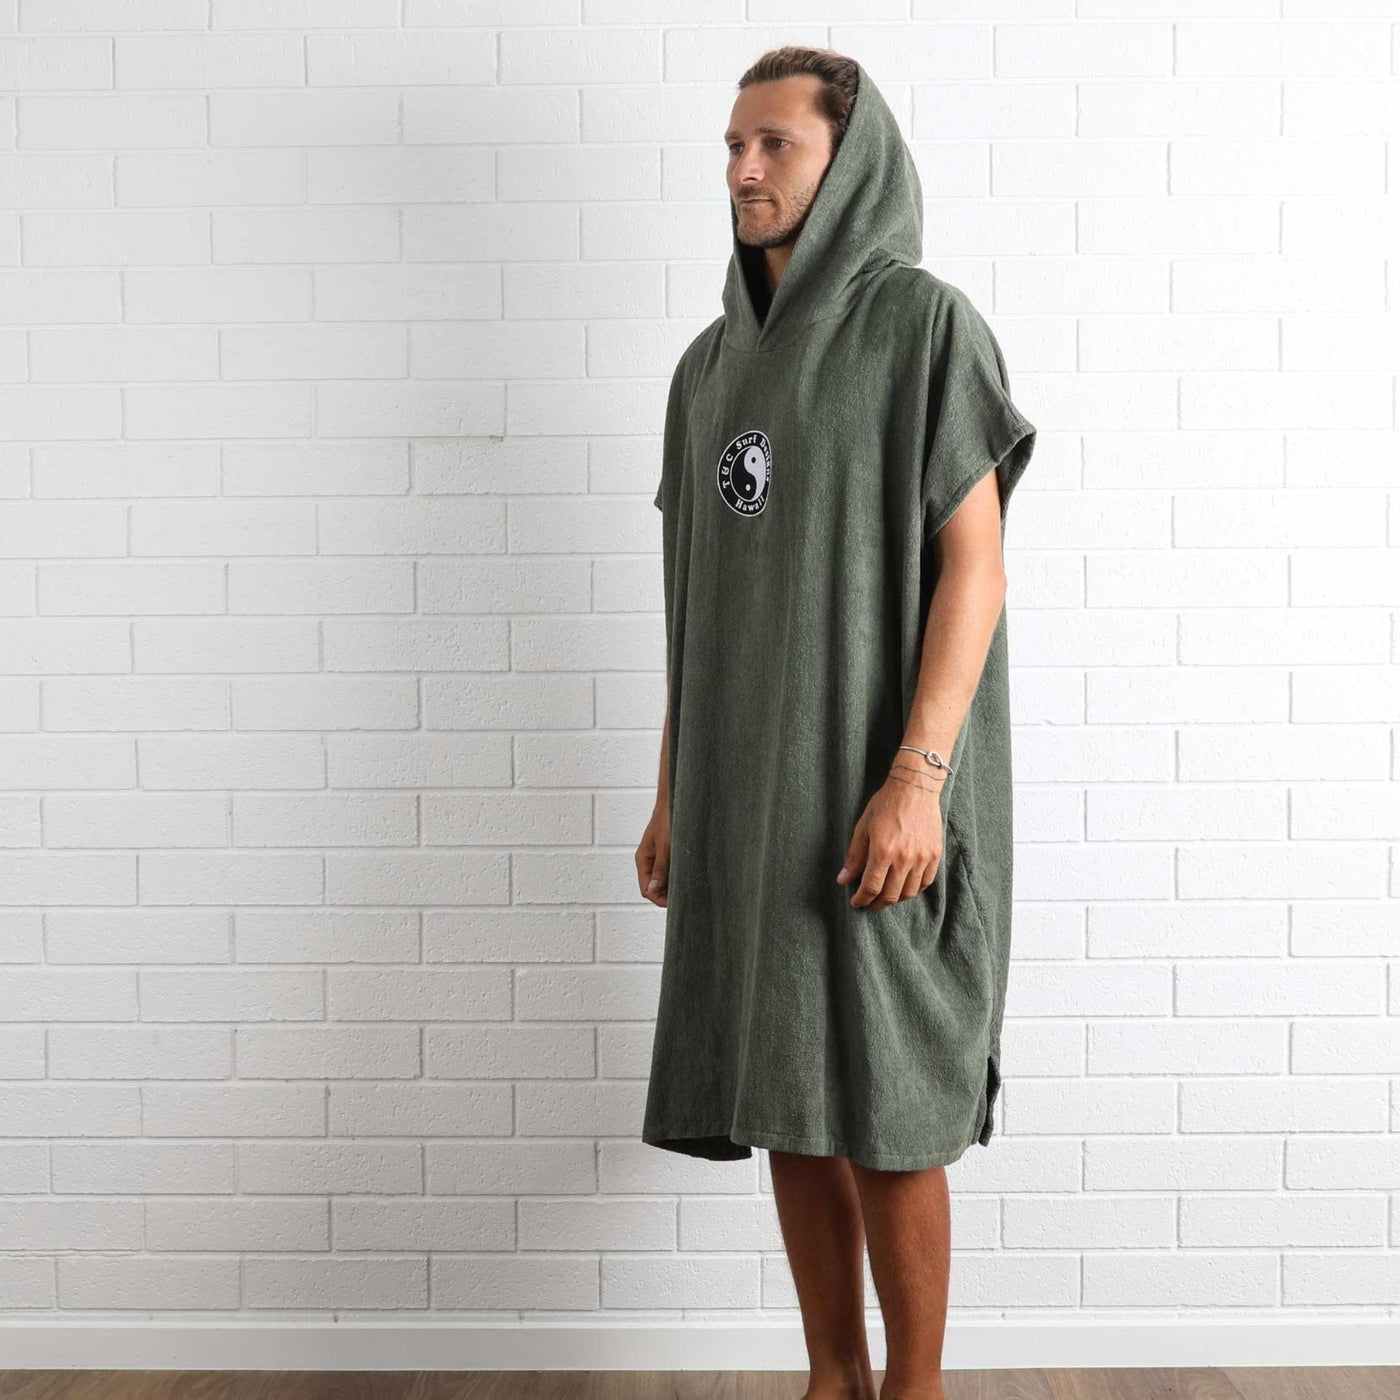 OG CF Hooded Towel - Military